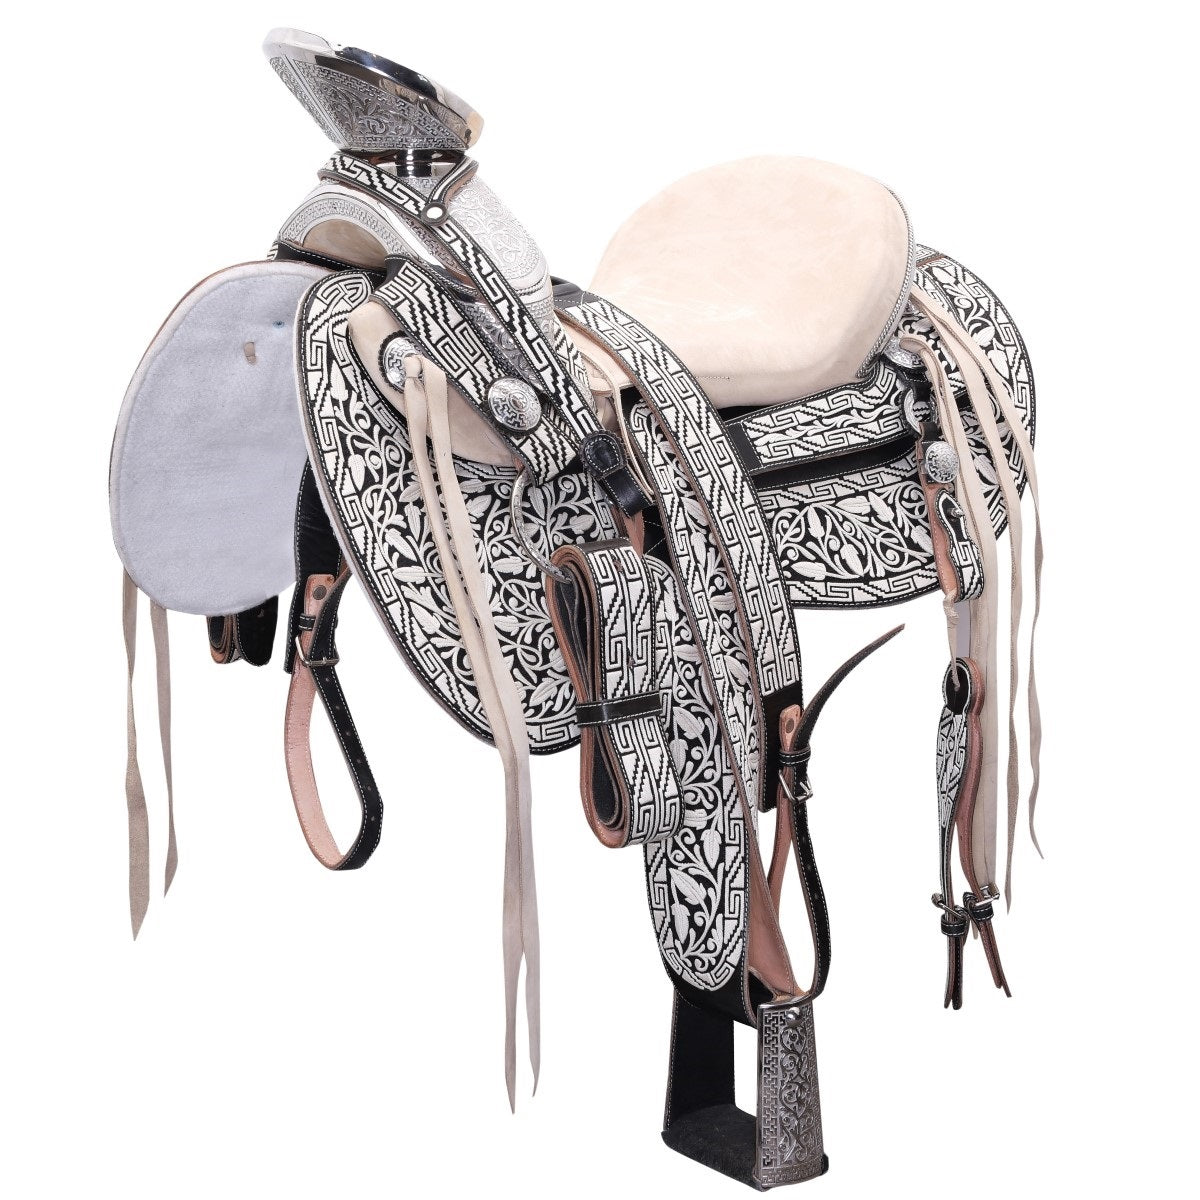 Silla de Montar para Caballo TM-WD1051-1021 Black with Pita- Horse Saddle